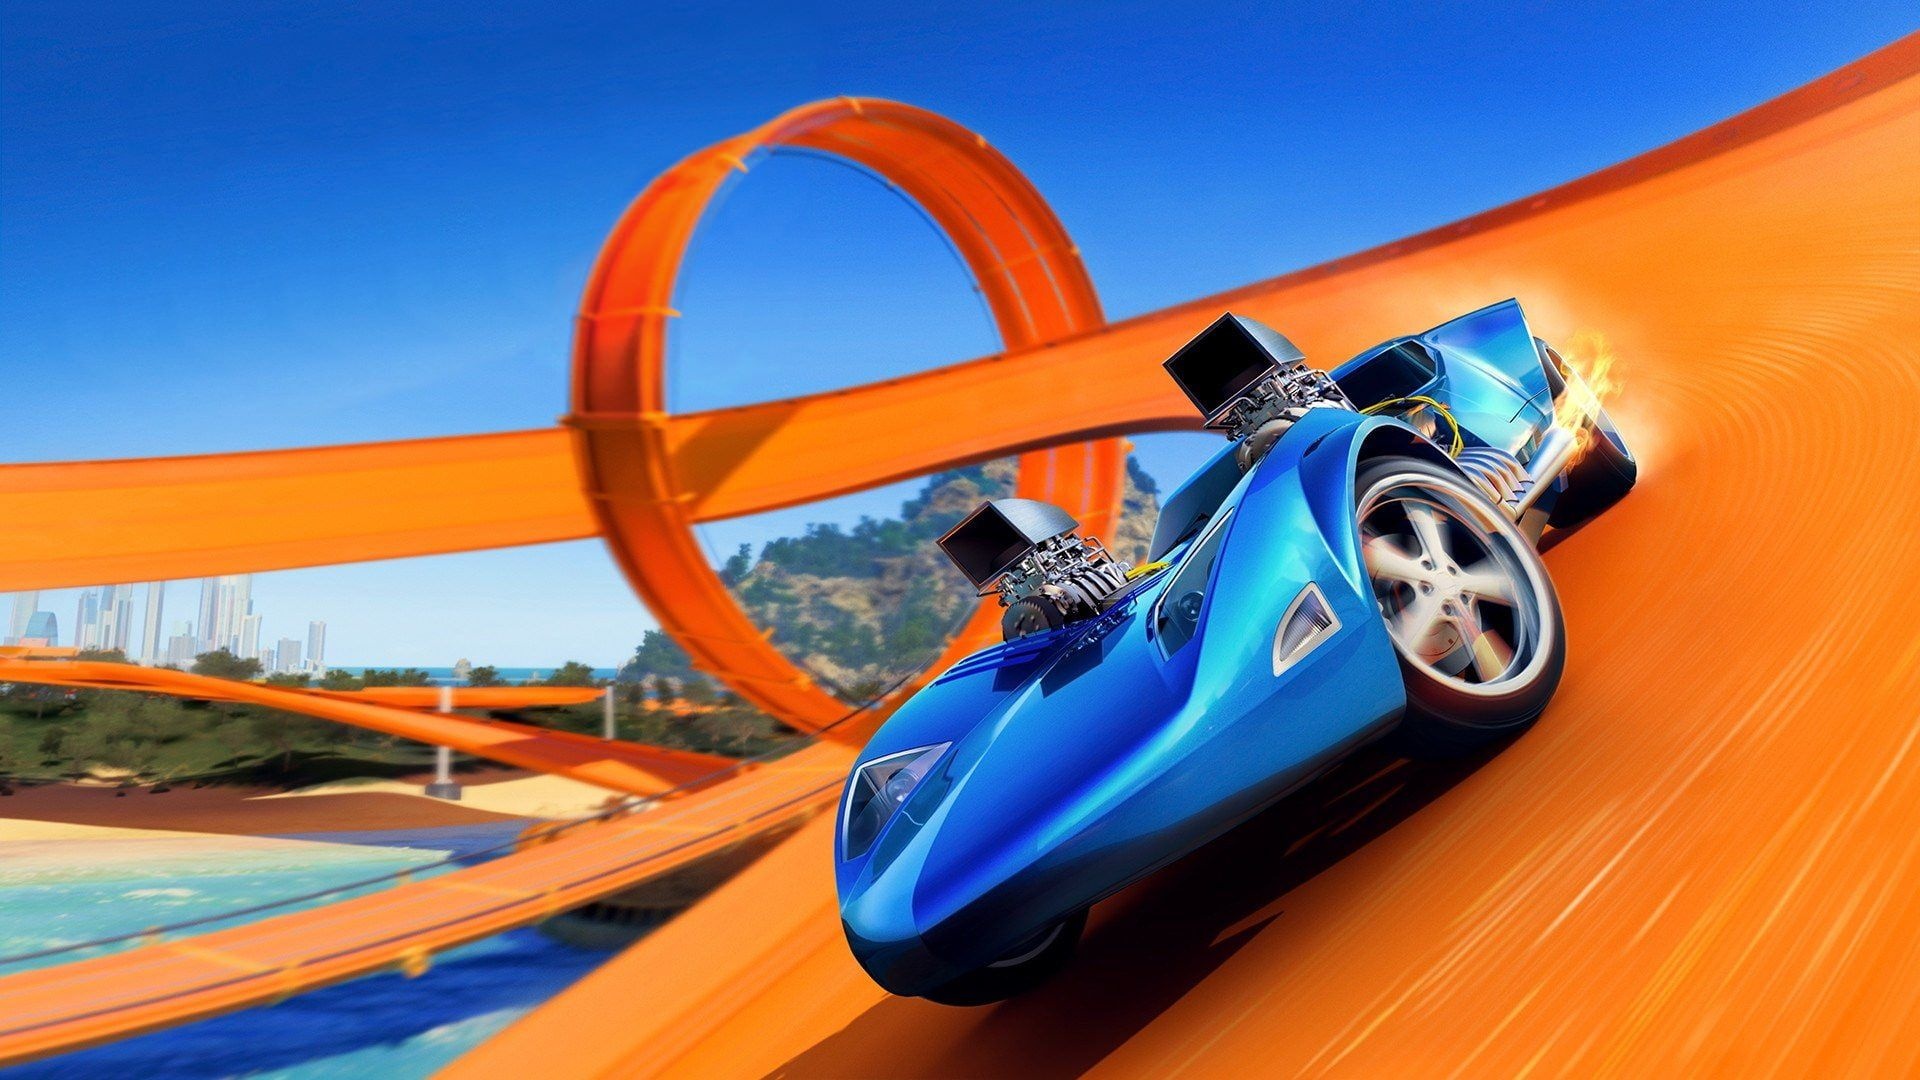 Hot Wheels cars, Stunning design, Blue racer, Cutting-edge technology, 1920x1080 Full HD Desktop